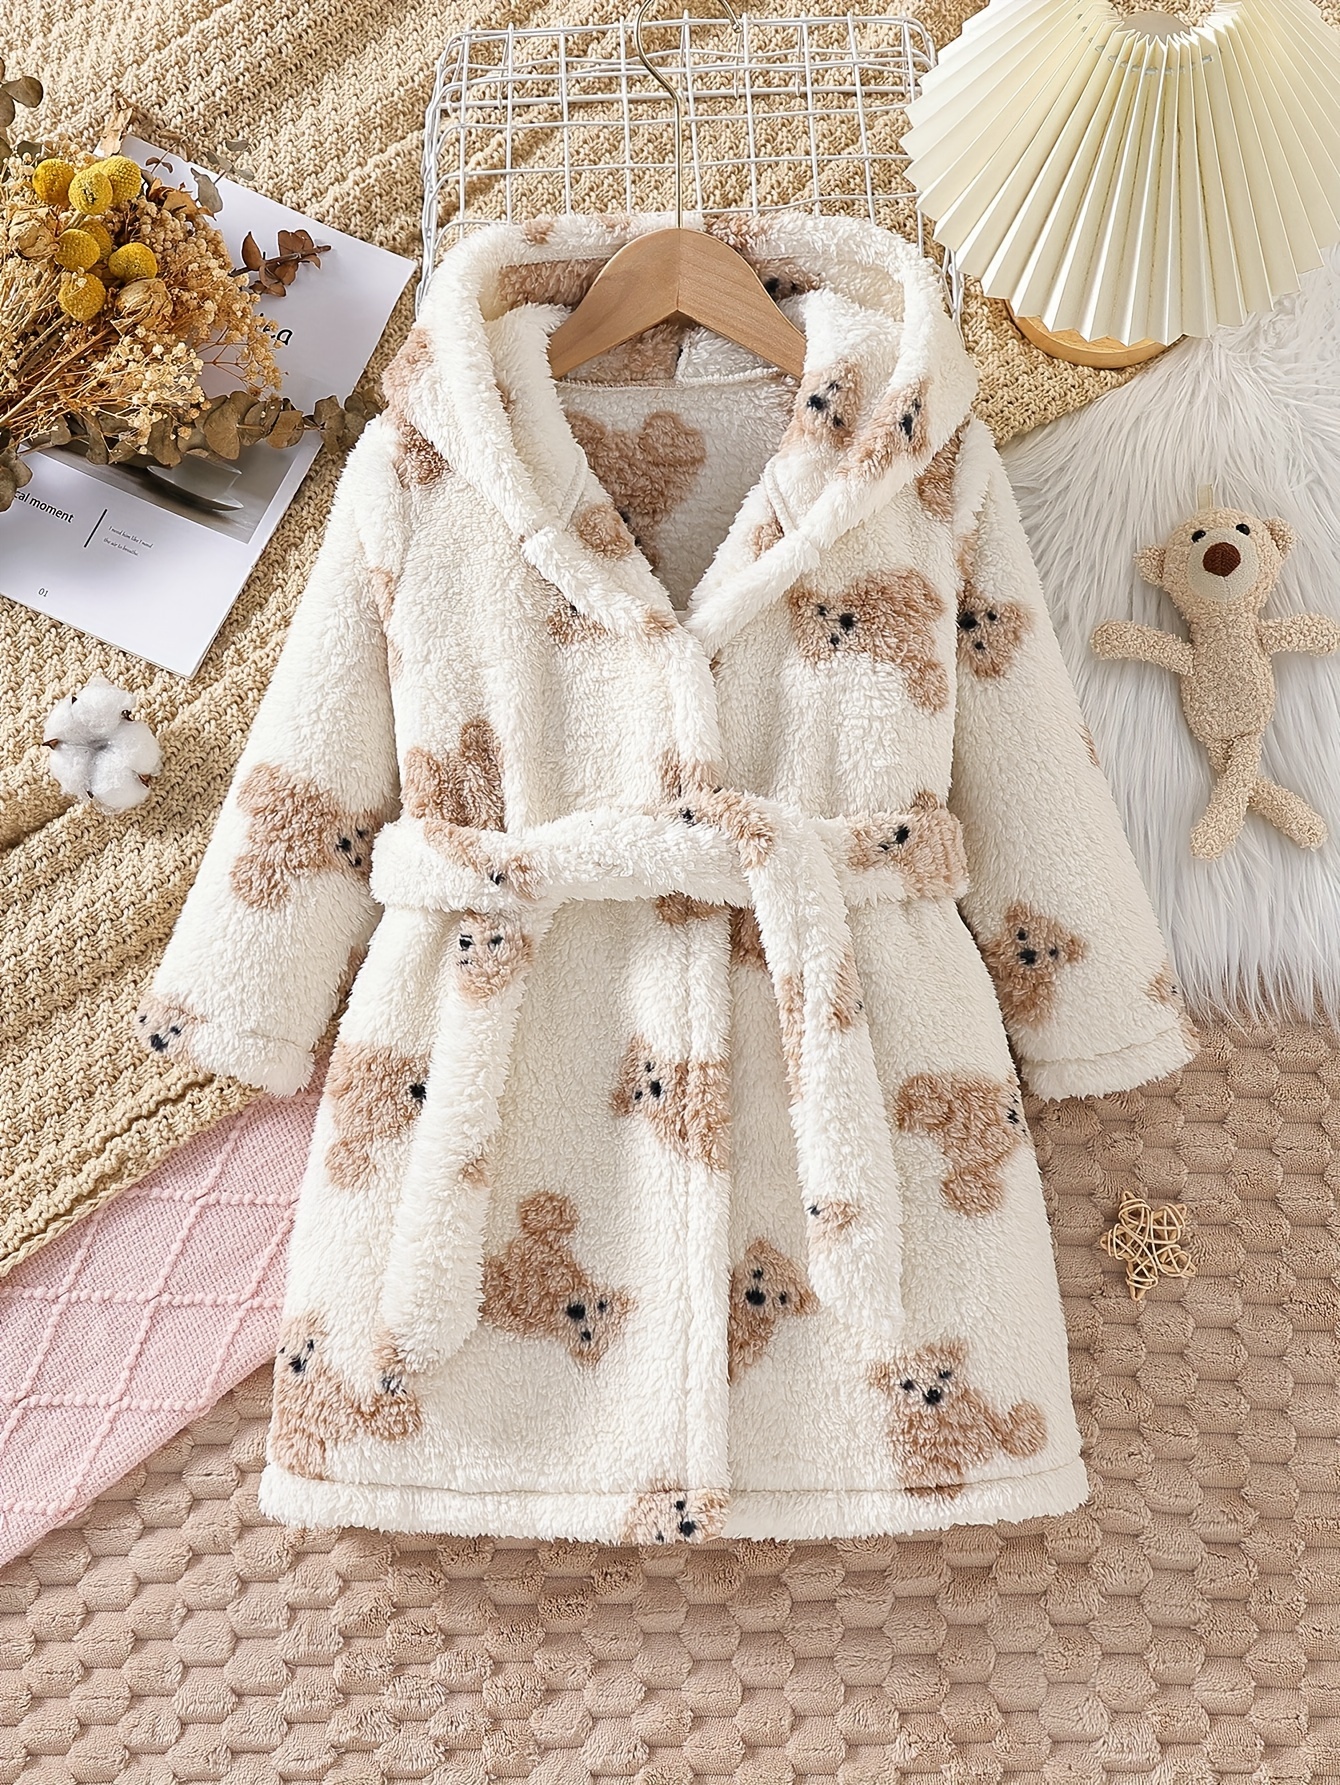 Snow Leopard Faux Fur Cozy Robe